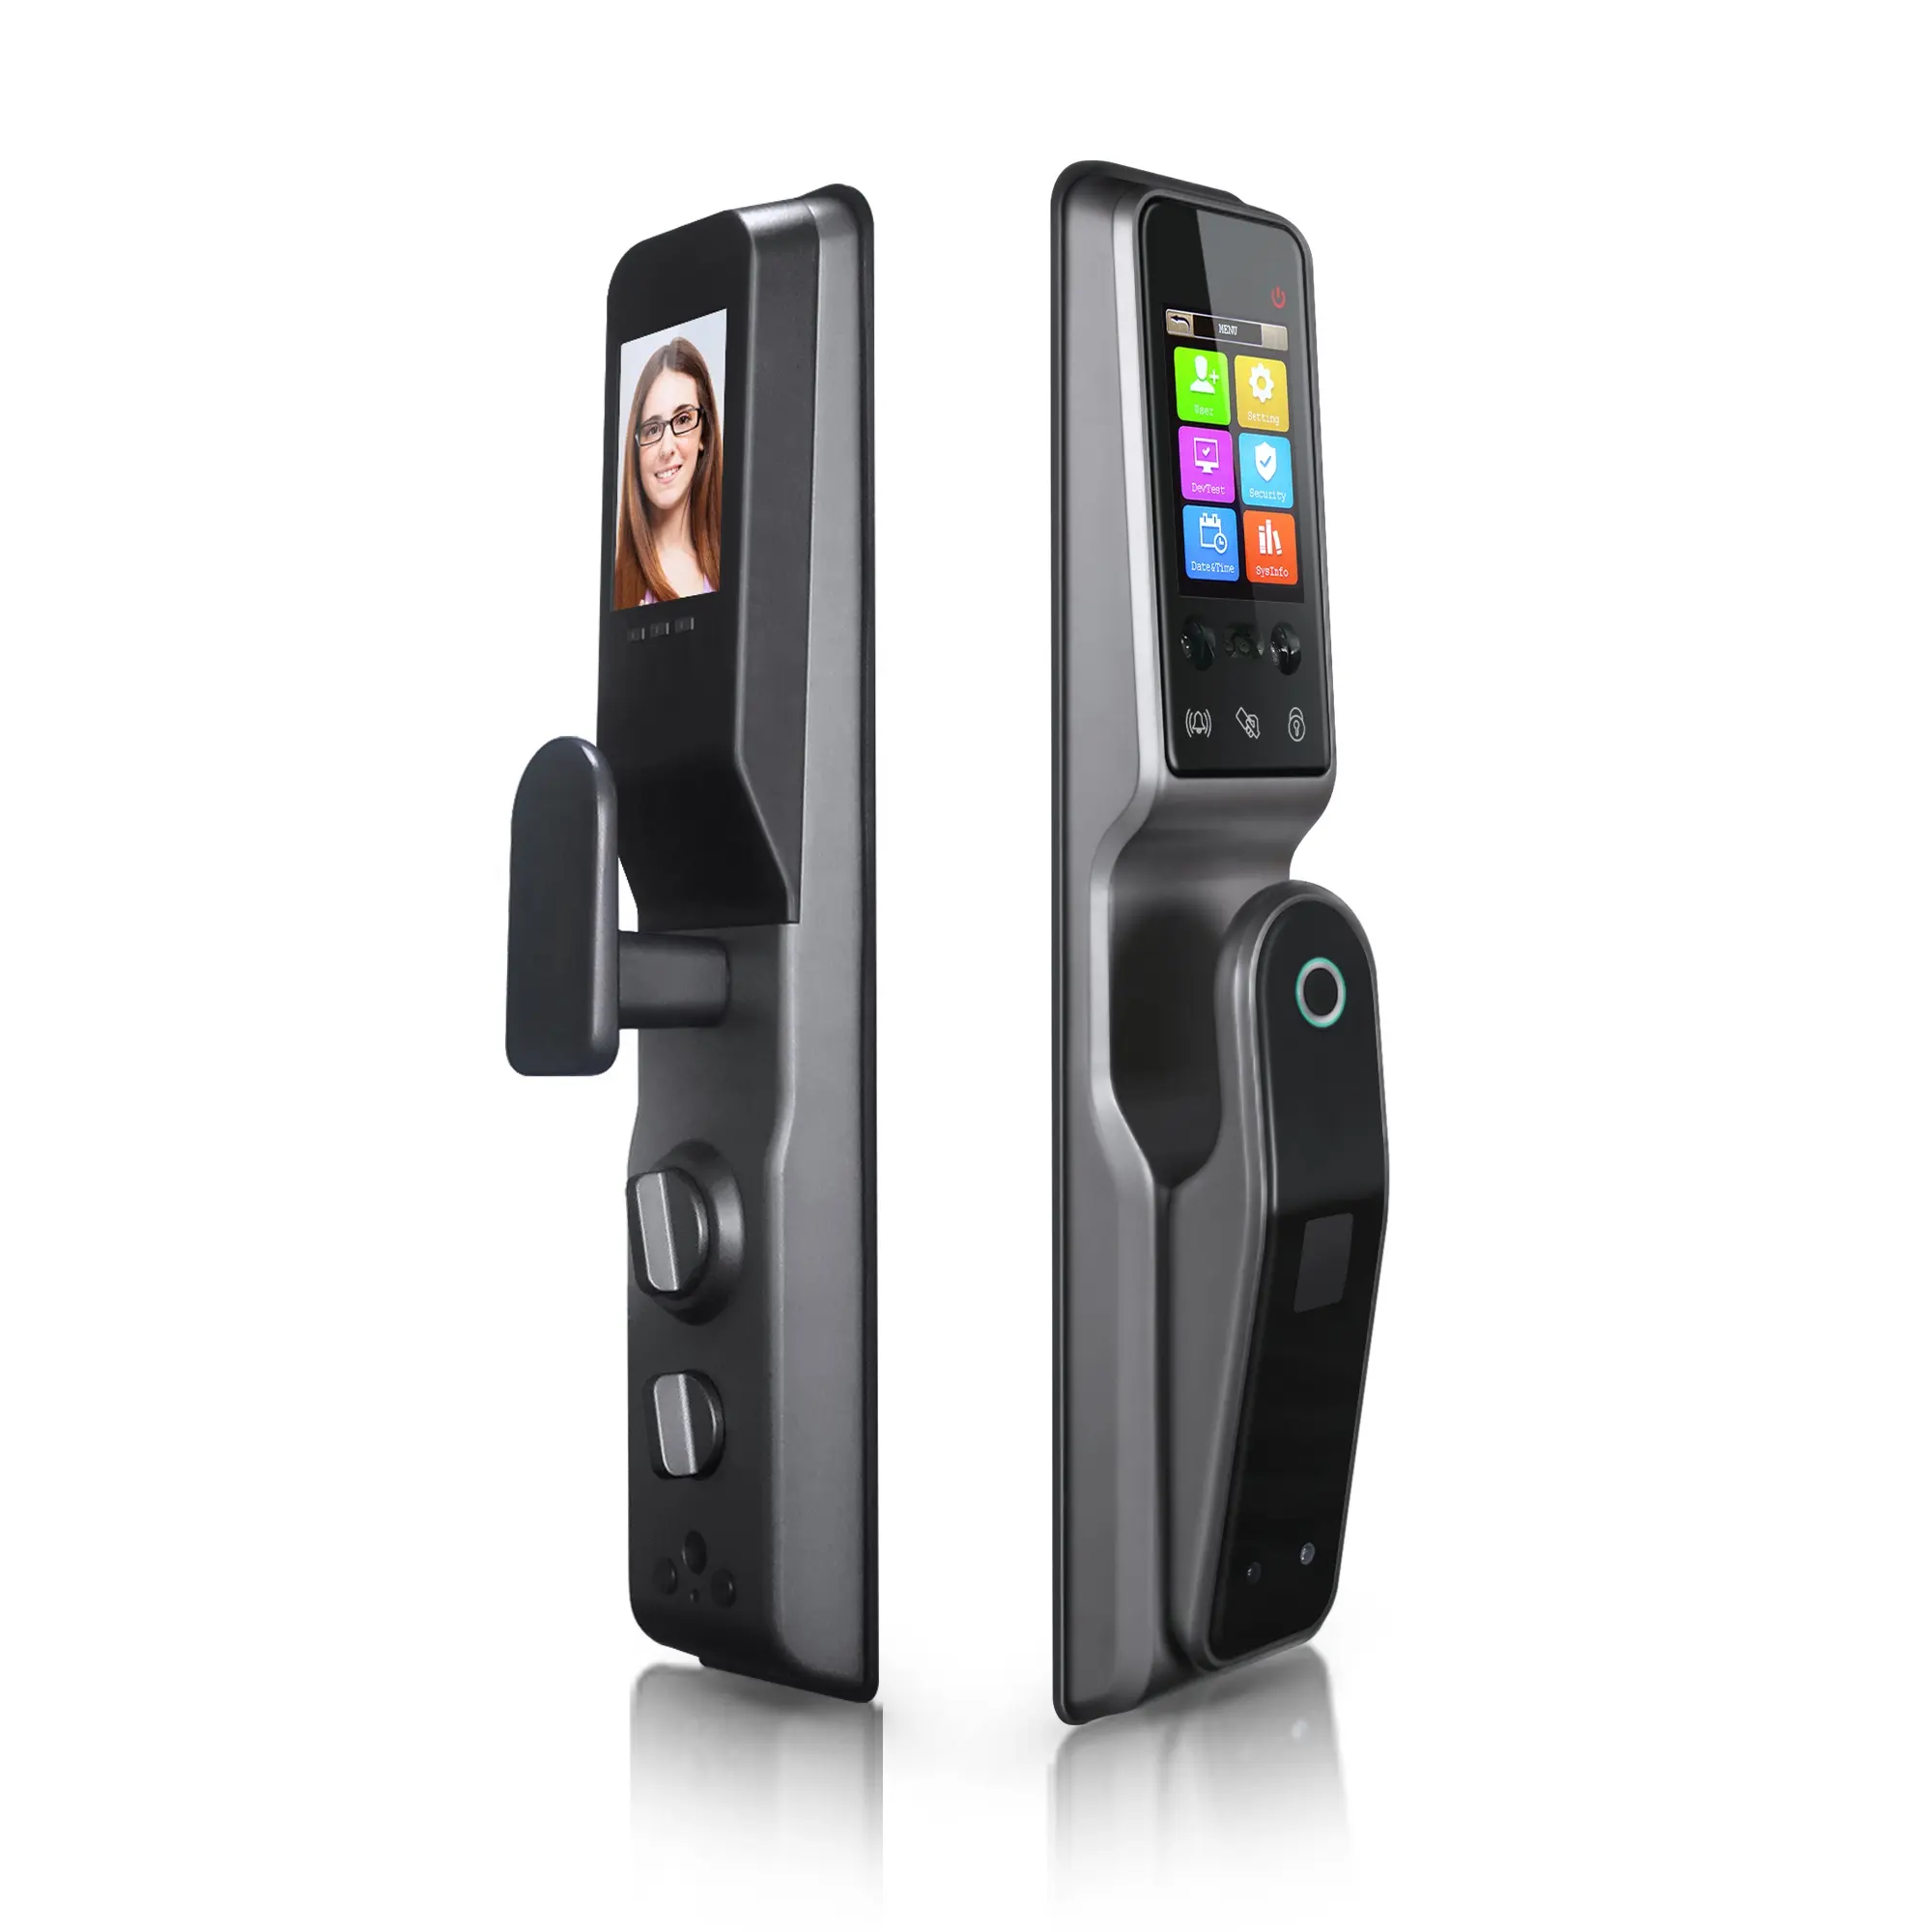 工場直販Tuya SmartAPP自動顔認識指紋WiFiドアロックとキャッツアイカメラPST-AF90P